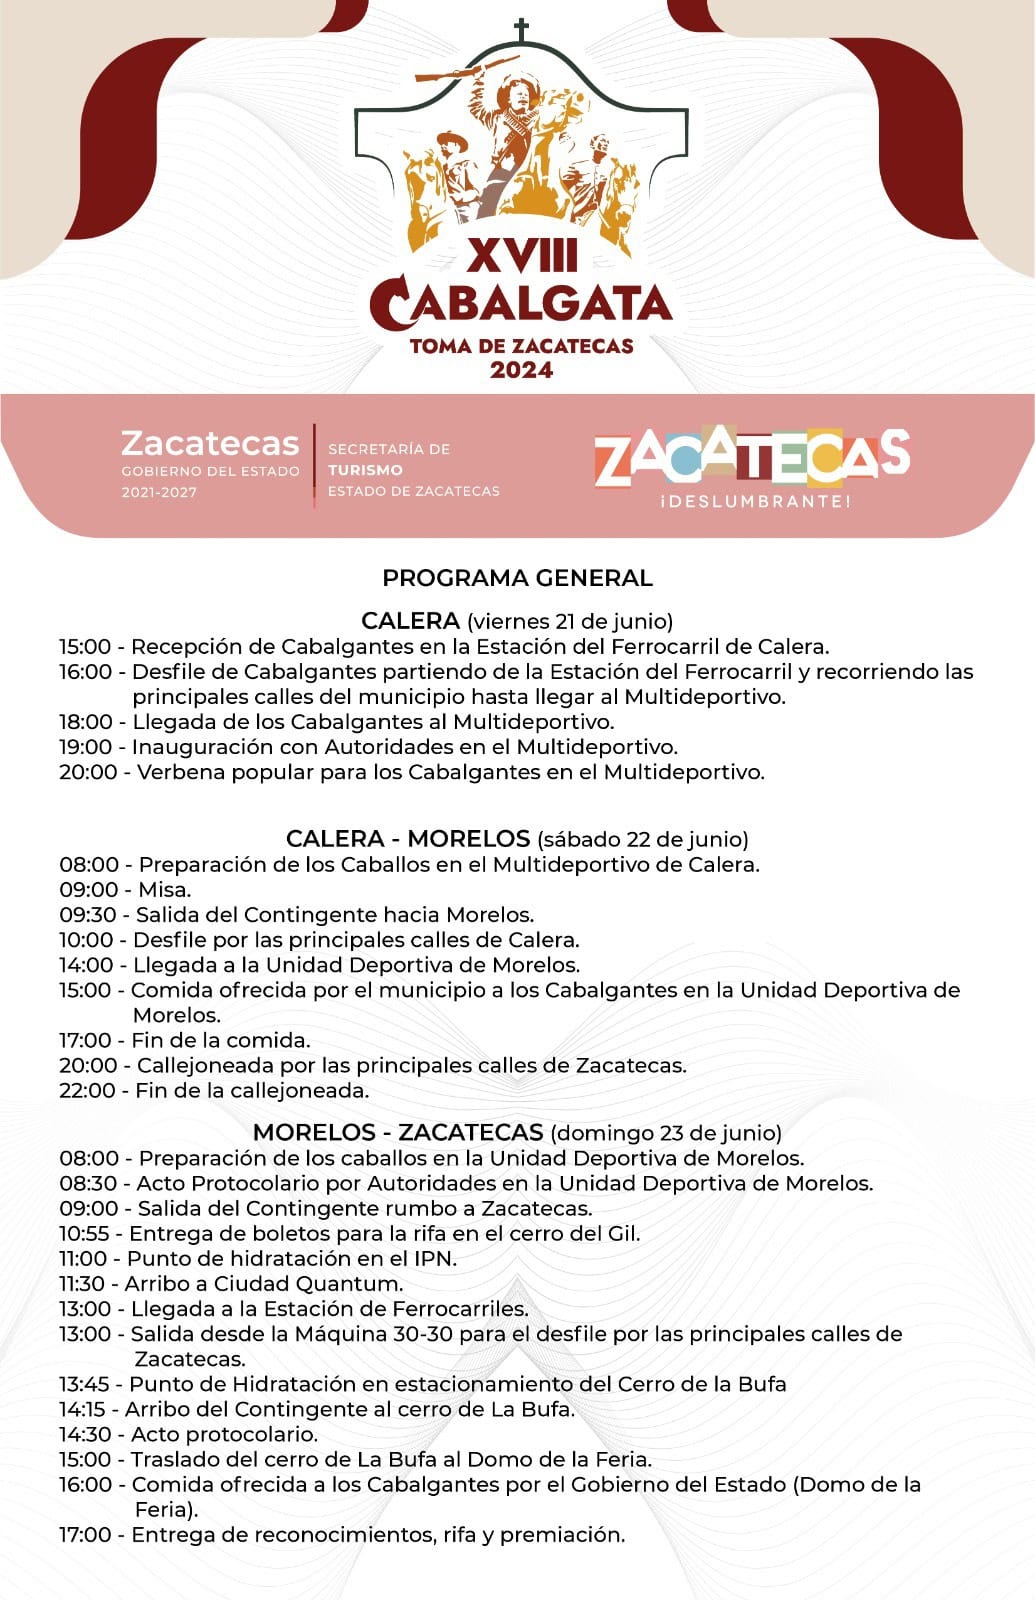 Programa de actividades de la Cabalgata de Zacatecas. Foto: Cortesía